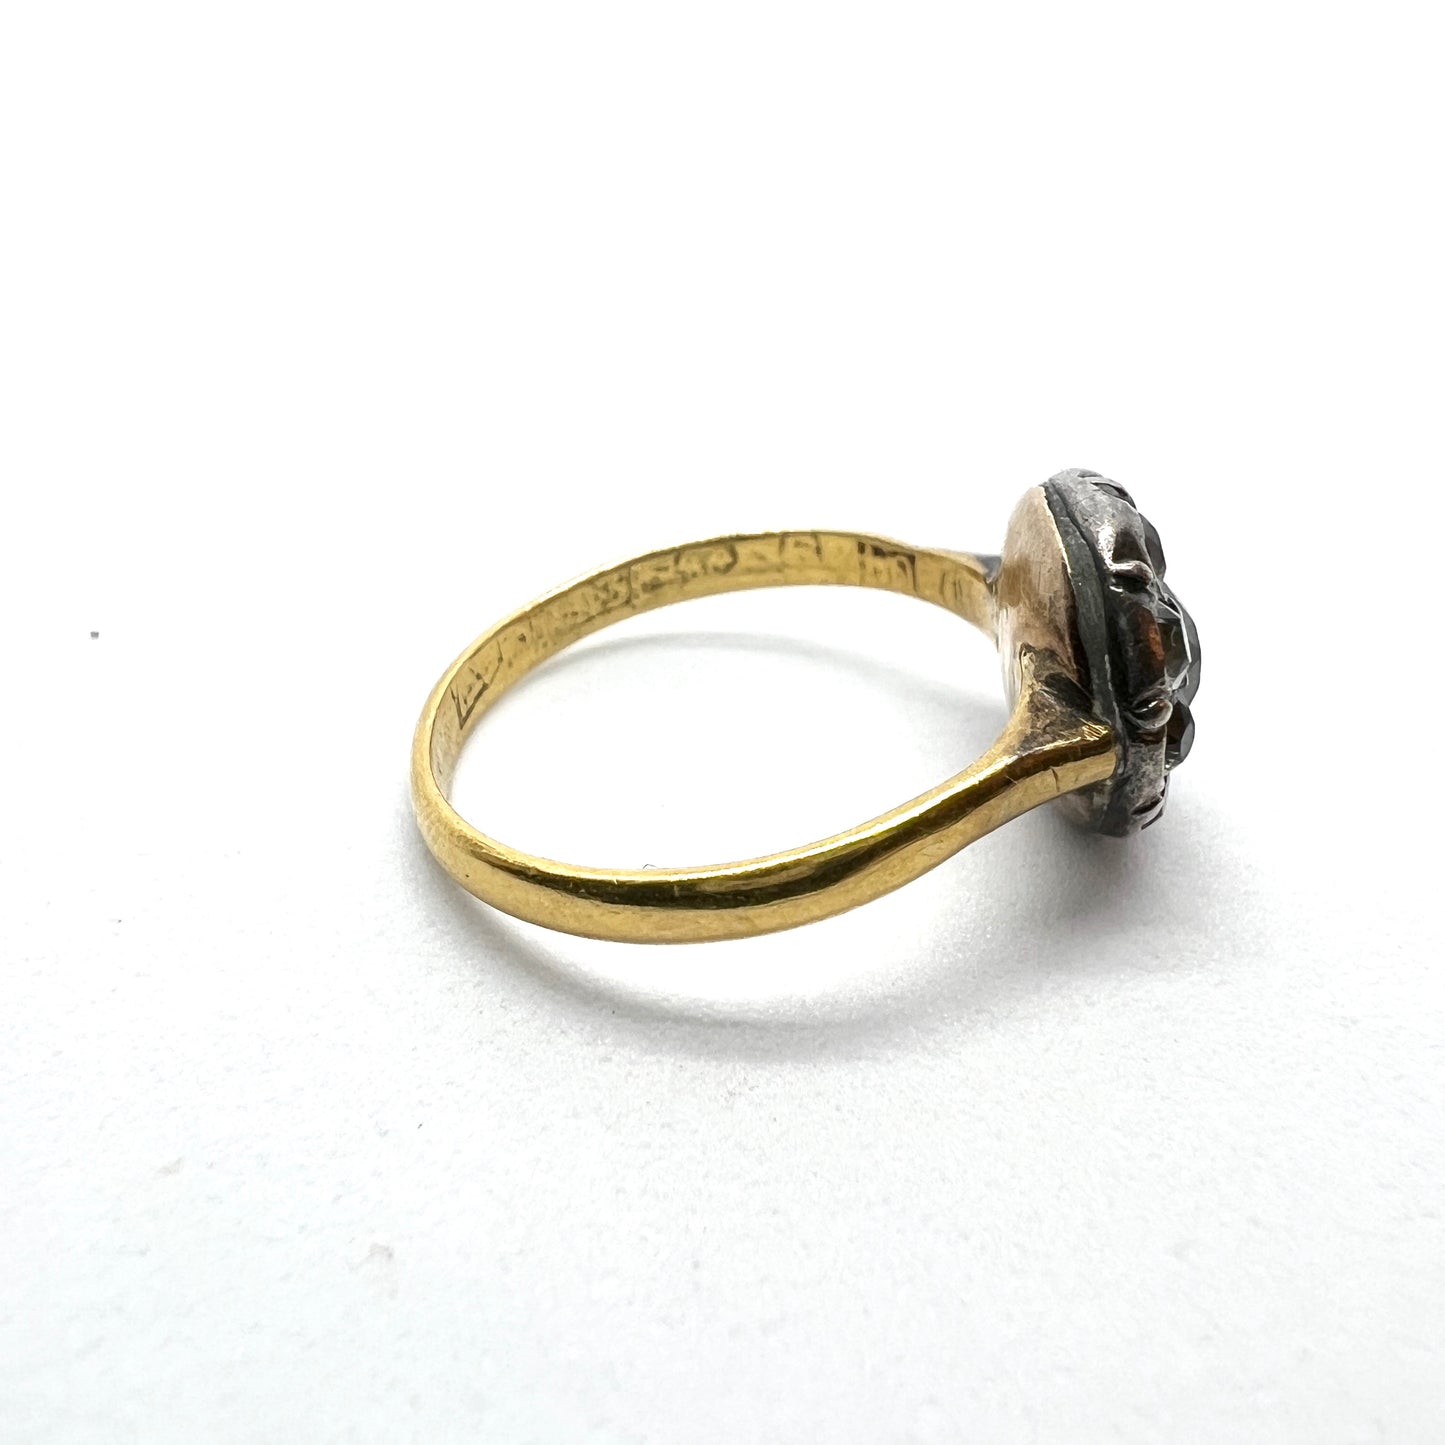 Sweden year 1846 Antique 20k Gold Paste Cluster Ring.